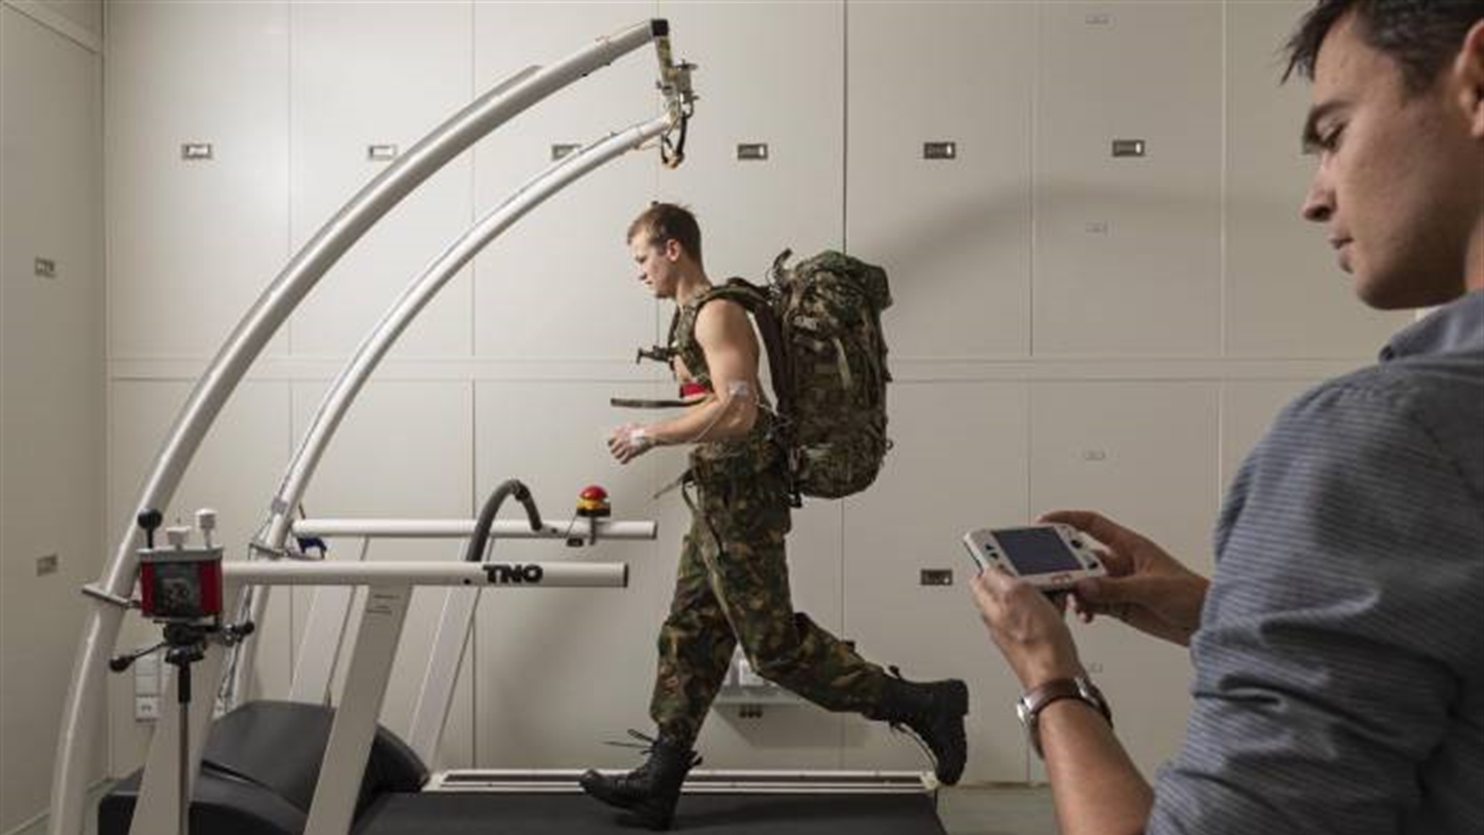 Militair rent op loopband met rugzak voor training